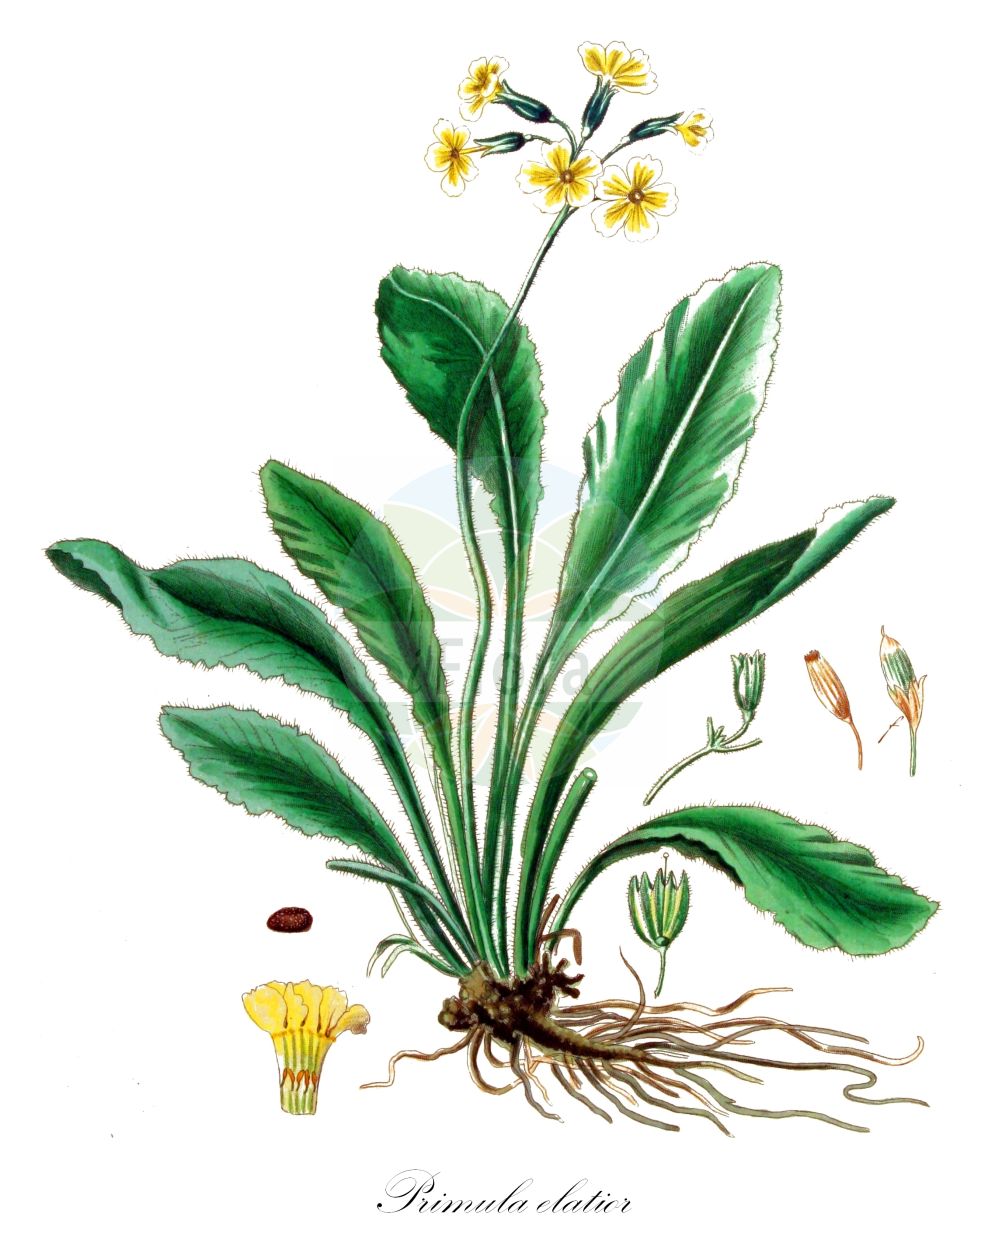 Historische Abbildung von Primula elatior (Hohe Schlüsselblume - Oxlip). Das Bild zeigt Blatt, Bluete, Frucht und Same. ---- Historical Drawing of Primula elatior (Hohe Schlüsselblume - Oxlip). The image is showing leaf, flower, fruit and seed.(Primula elatior,Hohe Schlüsselblume,Oxlip,Primula elatior,Primula perreiniana,Primula veris var. elatior,Hohe Schluesselblume,Grosse Schluesselblume,Hohe Primel,Oxlip,Paigle,Primula,Schlüsselblume,Primrose,Primulaceae,Schlüsselblumengewächse,Primrose family,Blatt,Bluete,Frucht,Same,leaf,flower,fruit,seed,Kops (1800-1934))